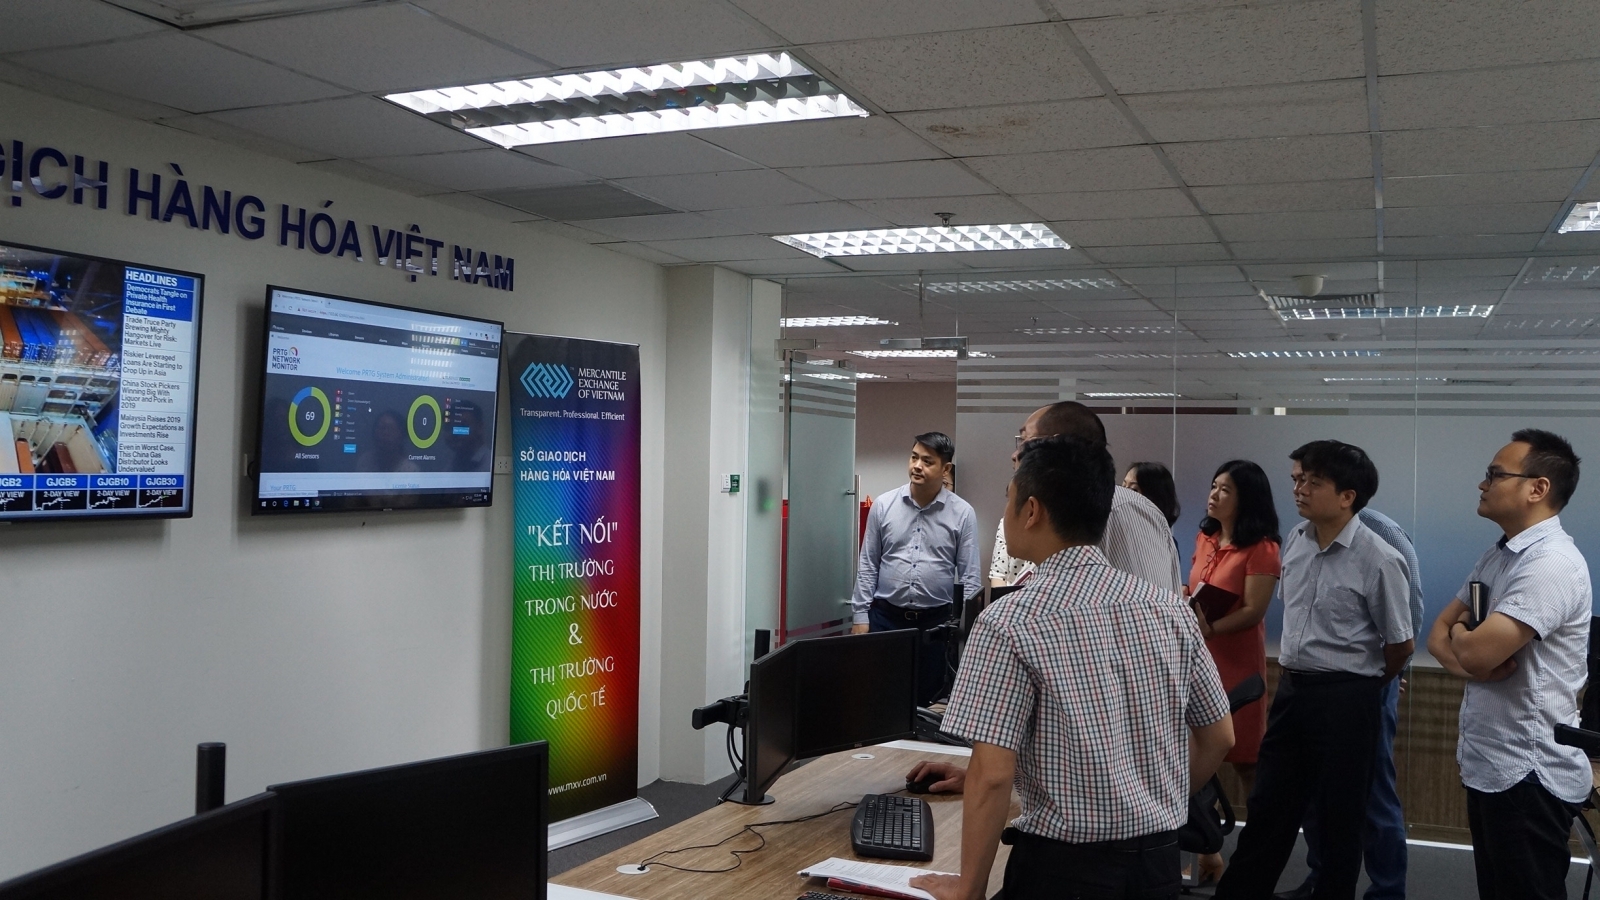 Đoàn công tác của Bộ Công thương kiểm tra định kỳ công tác giao dịch tại Sở Giao dịch Hàng hóa Việt Nam (MXV)